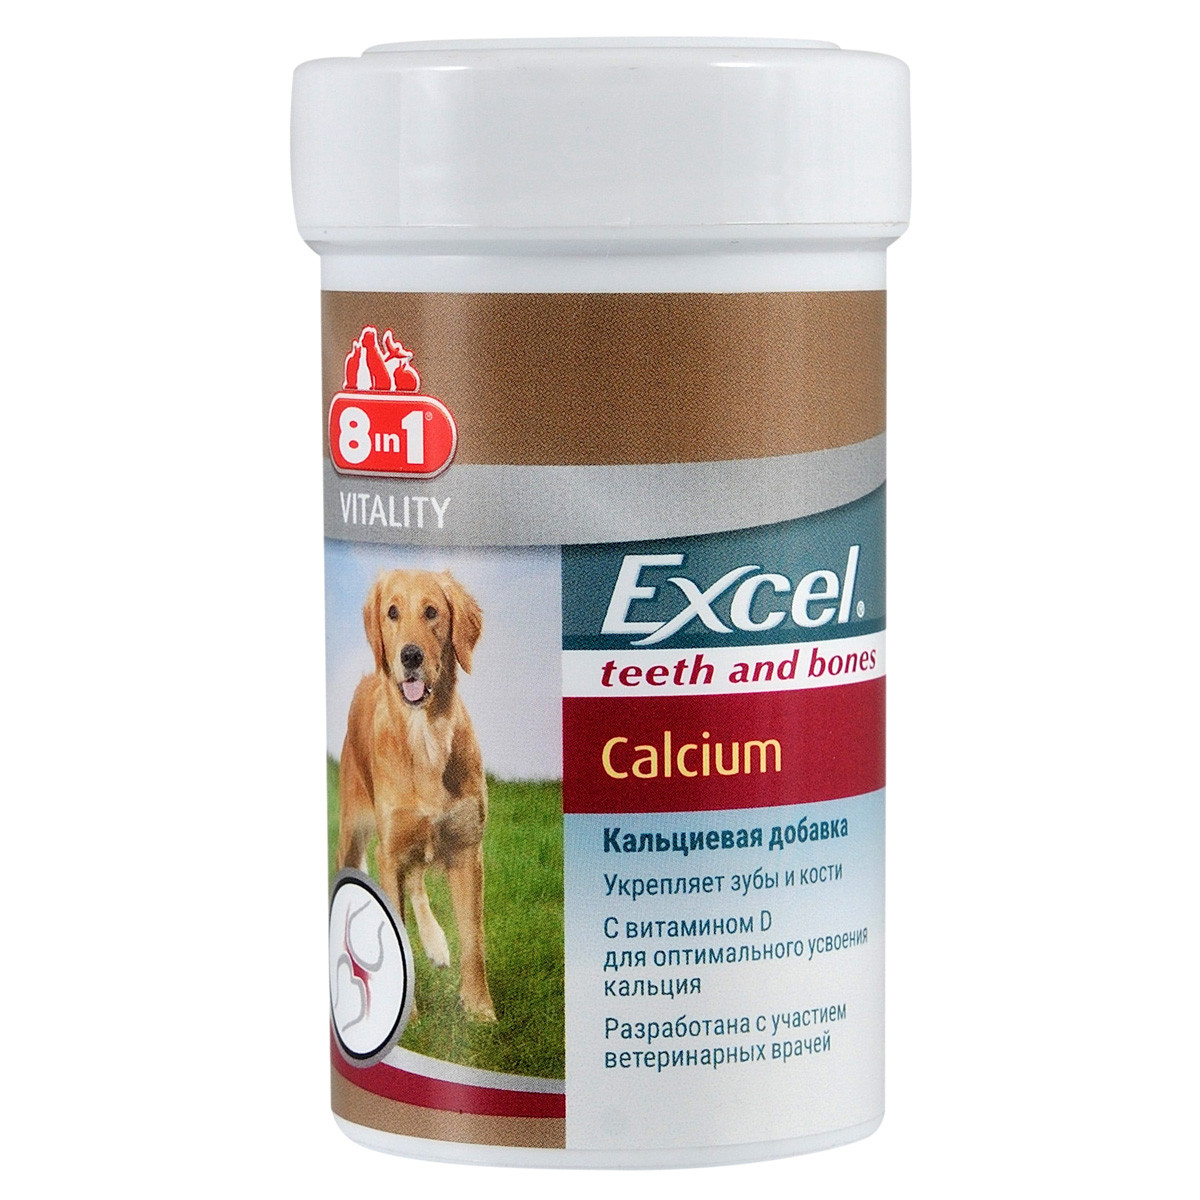 Вітаміни для собак 8in1 Excel Calcium з кальцієм і фосфором, 155 таб